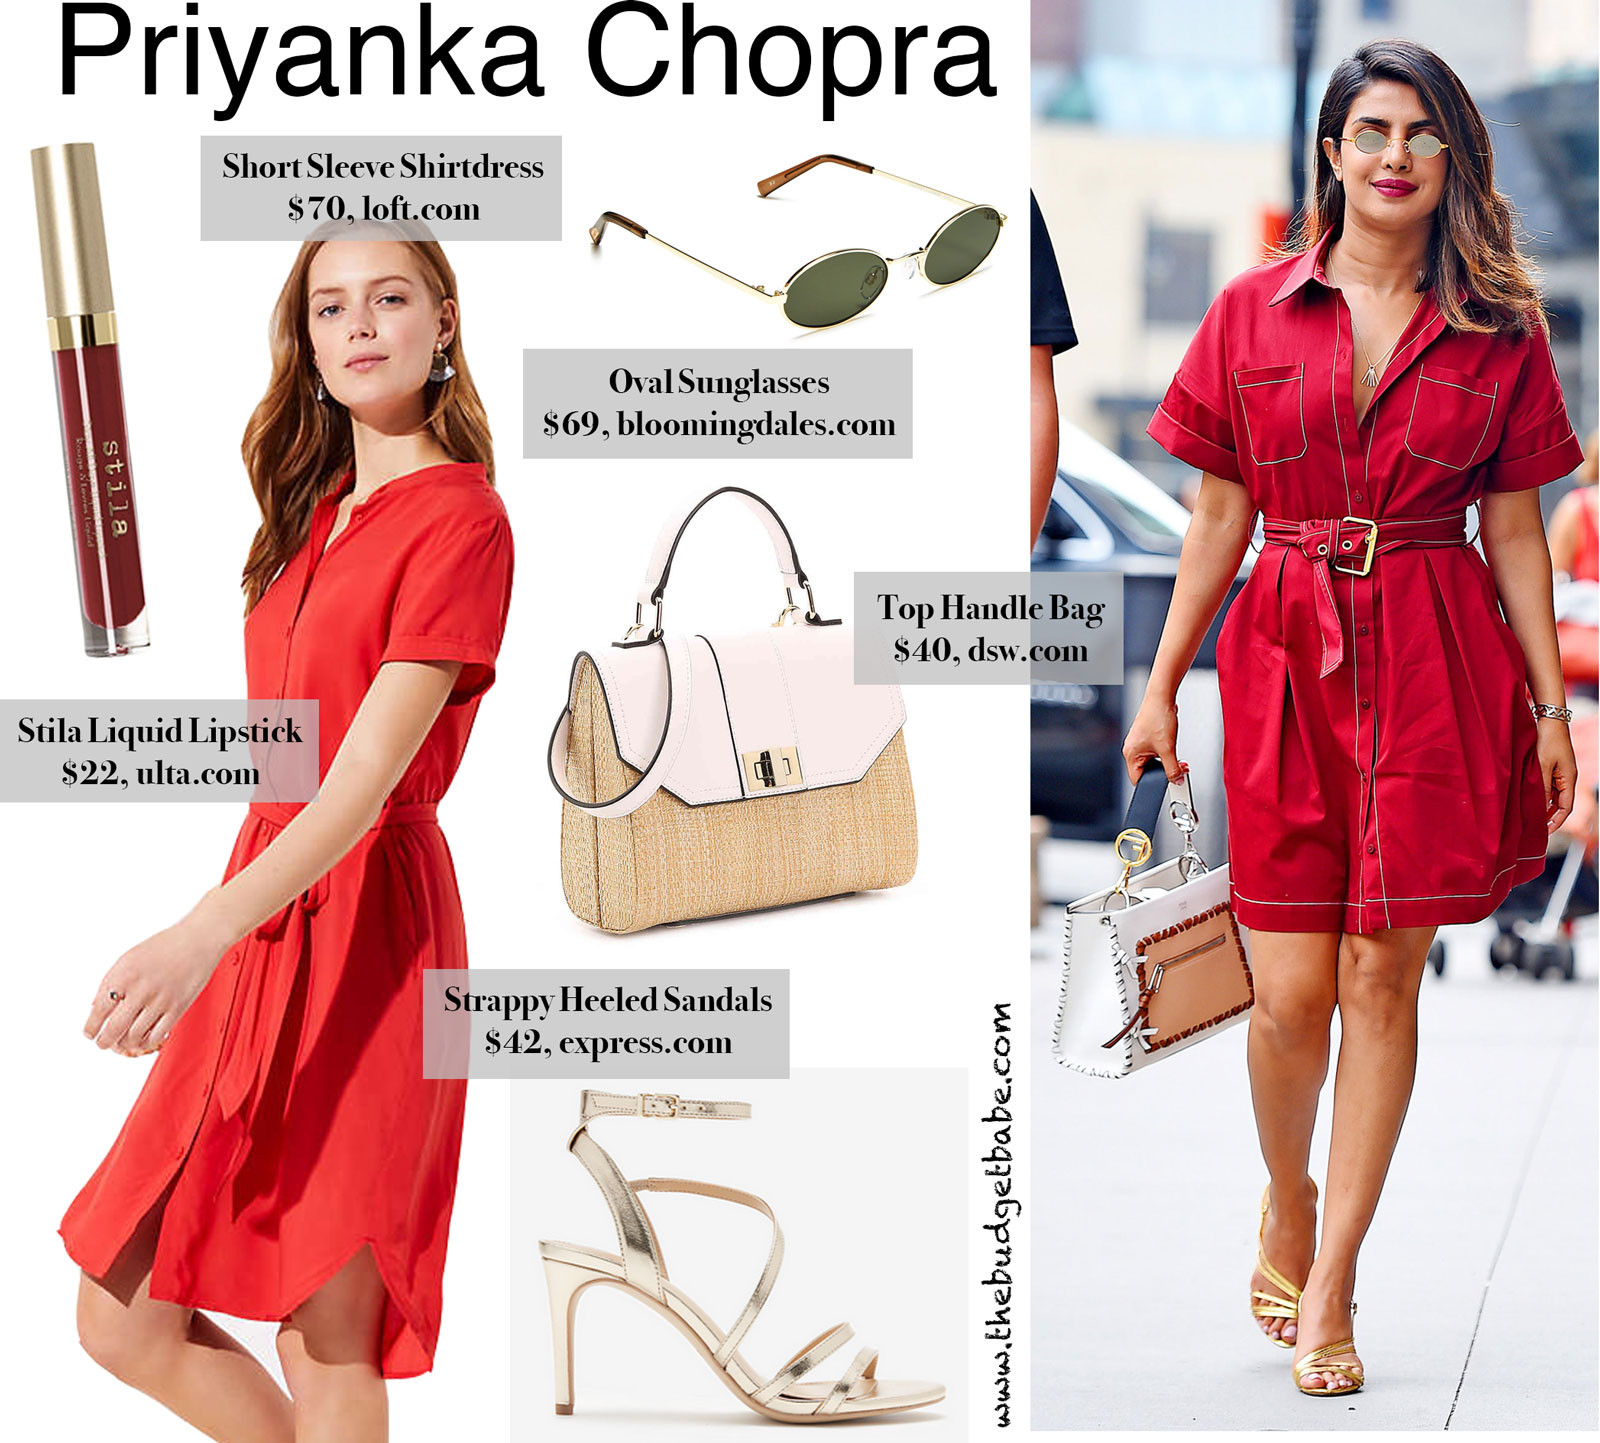 Priyanka Chopra Red Shirtdress Look for Less